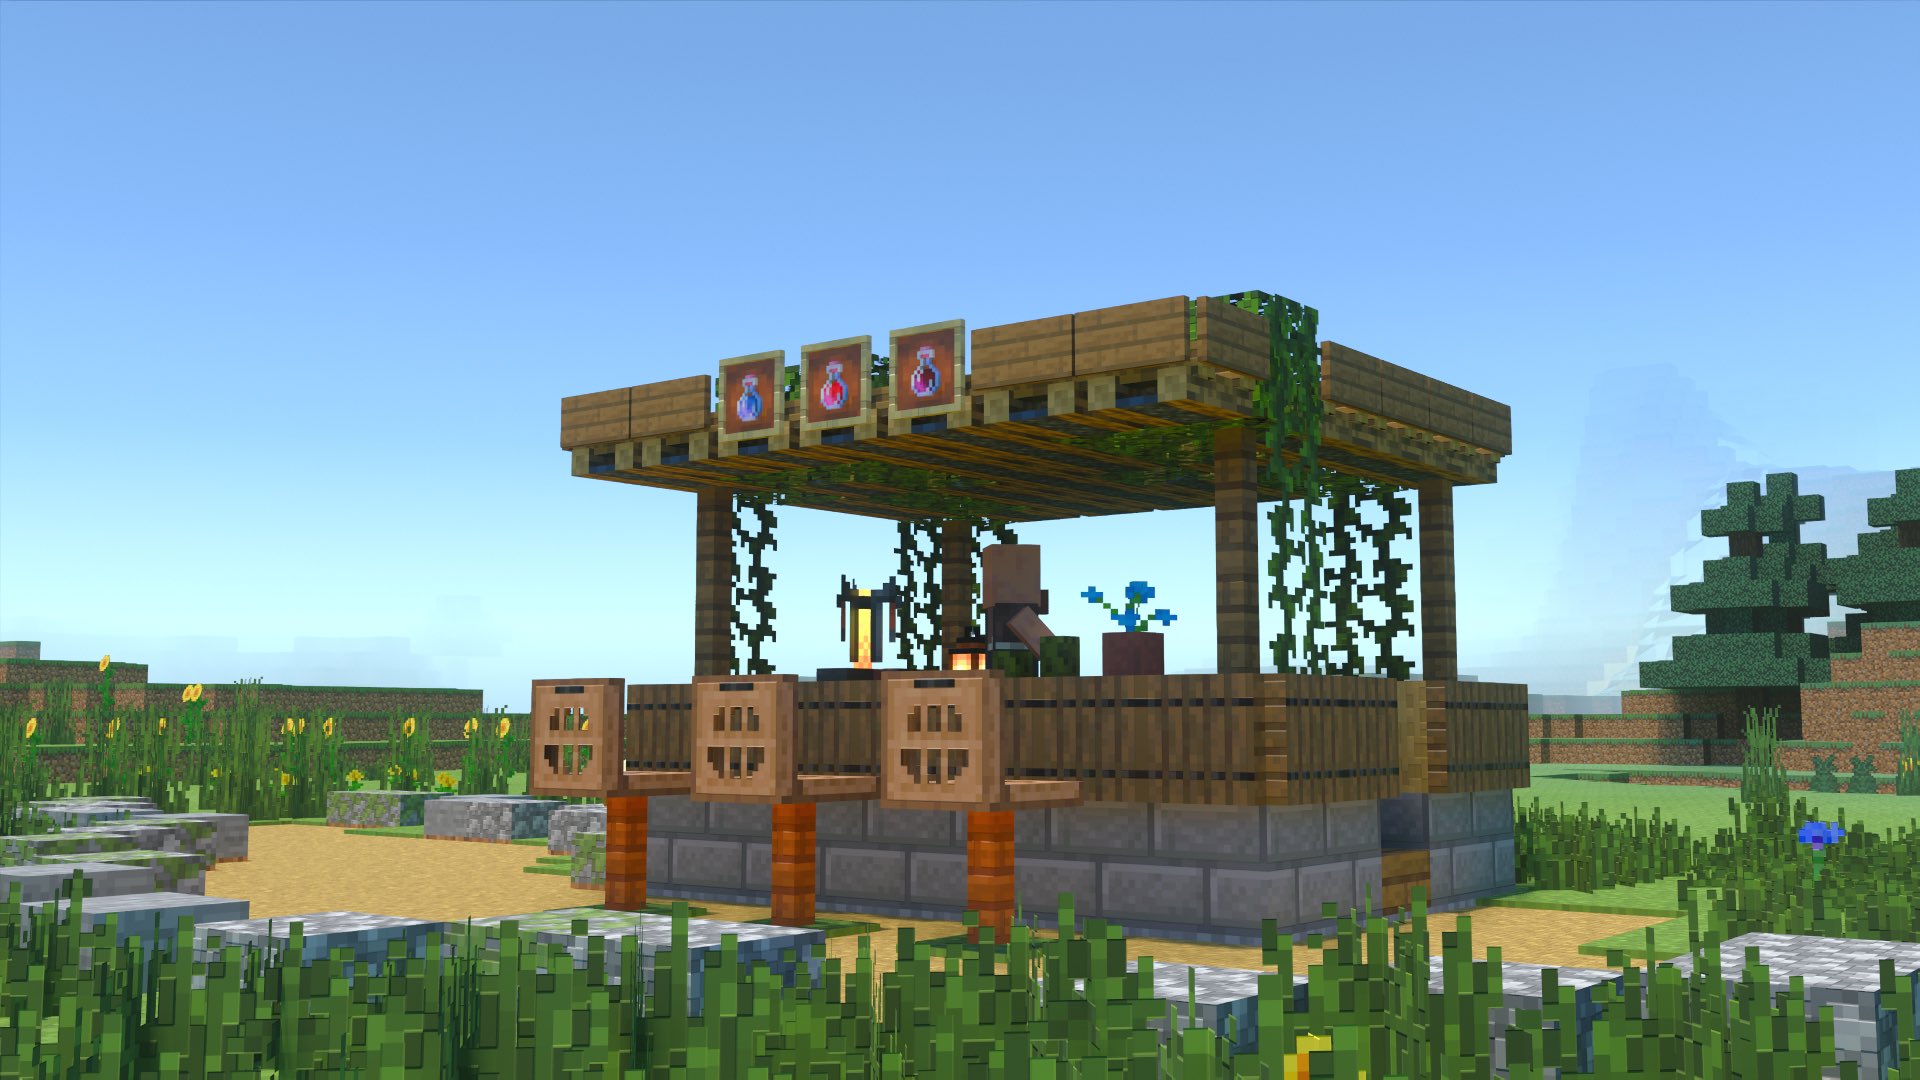 Kogumapro こぐまぷろ 今日は小さめのお店を作ってみました 個人的にはポーション屋さんです ファンタジーな世界だとこんなお店が道端にありそうな気がします マイクラ Minecraft建築コミュ マインクラフト Minecraft バニラ建築学部 T